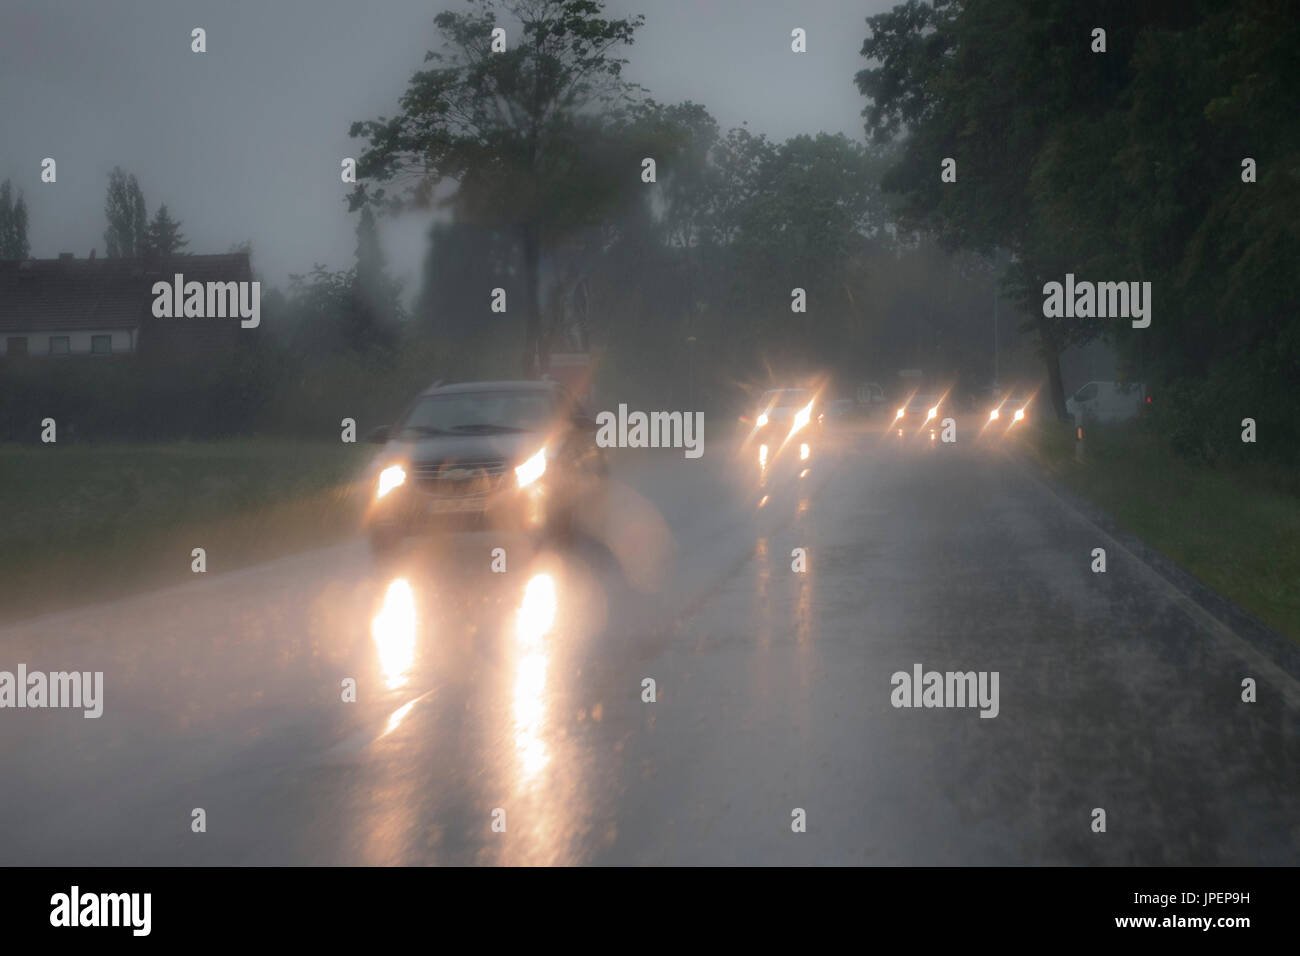 Gefährliche Autofahrt bei Starkregen, blendende Scheinwerfer im Gegenverkehr Foto Stock